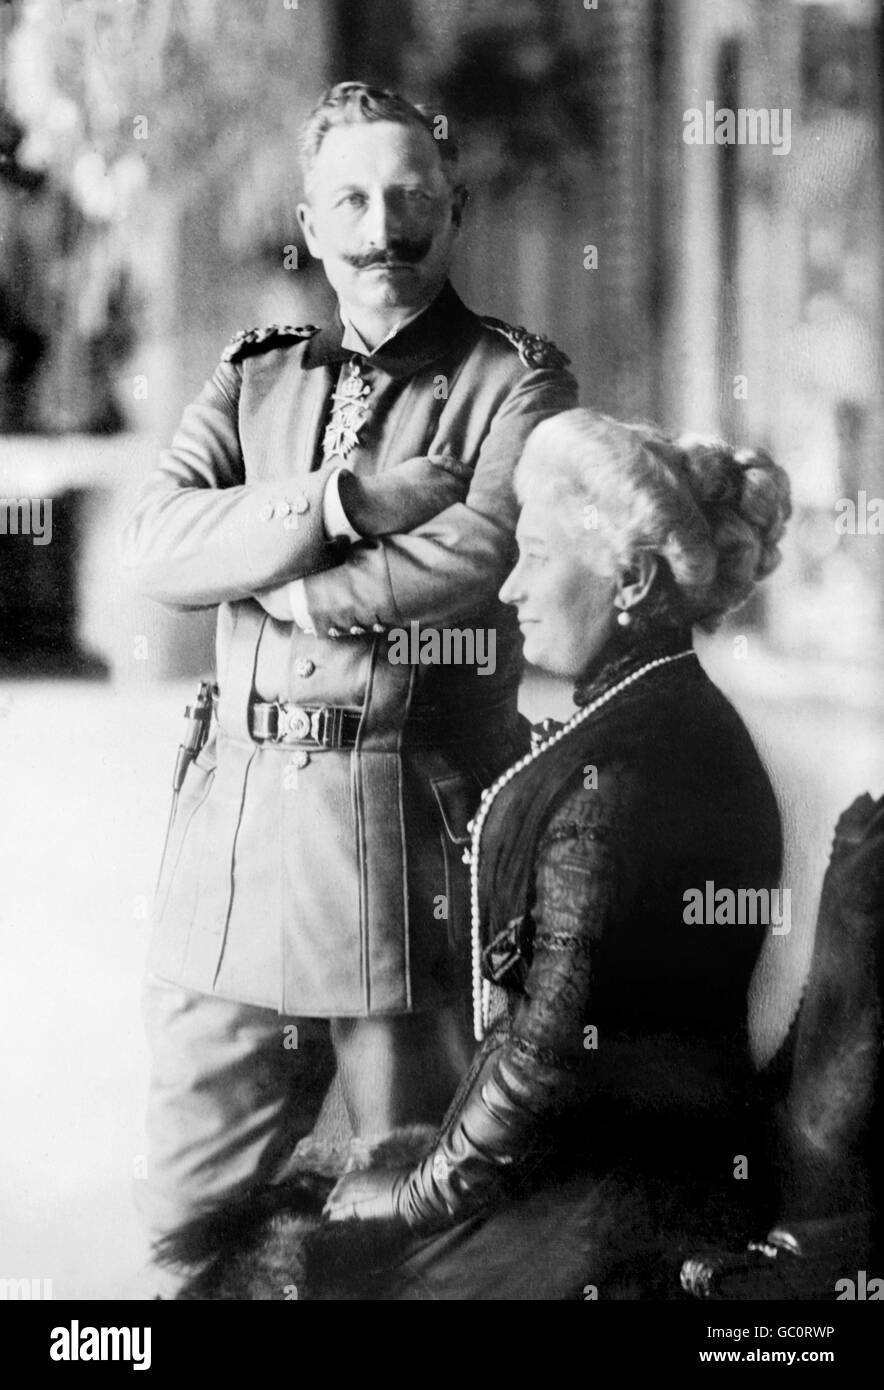 Ritratto di Kaiser Wilhelm II (1859-1941), l'imperatore di Germania e re di Prussia e sua moglie, Kaiserin Augusta Victoria. Foto da Bain News Service, c.1910-1915. Foto Stock